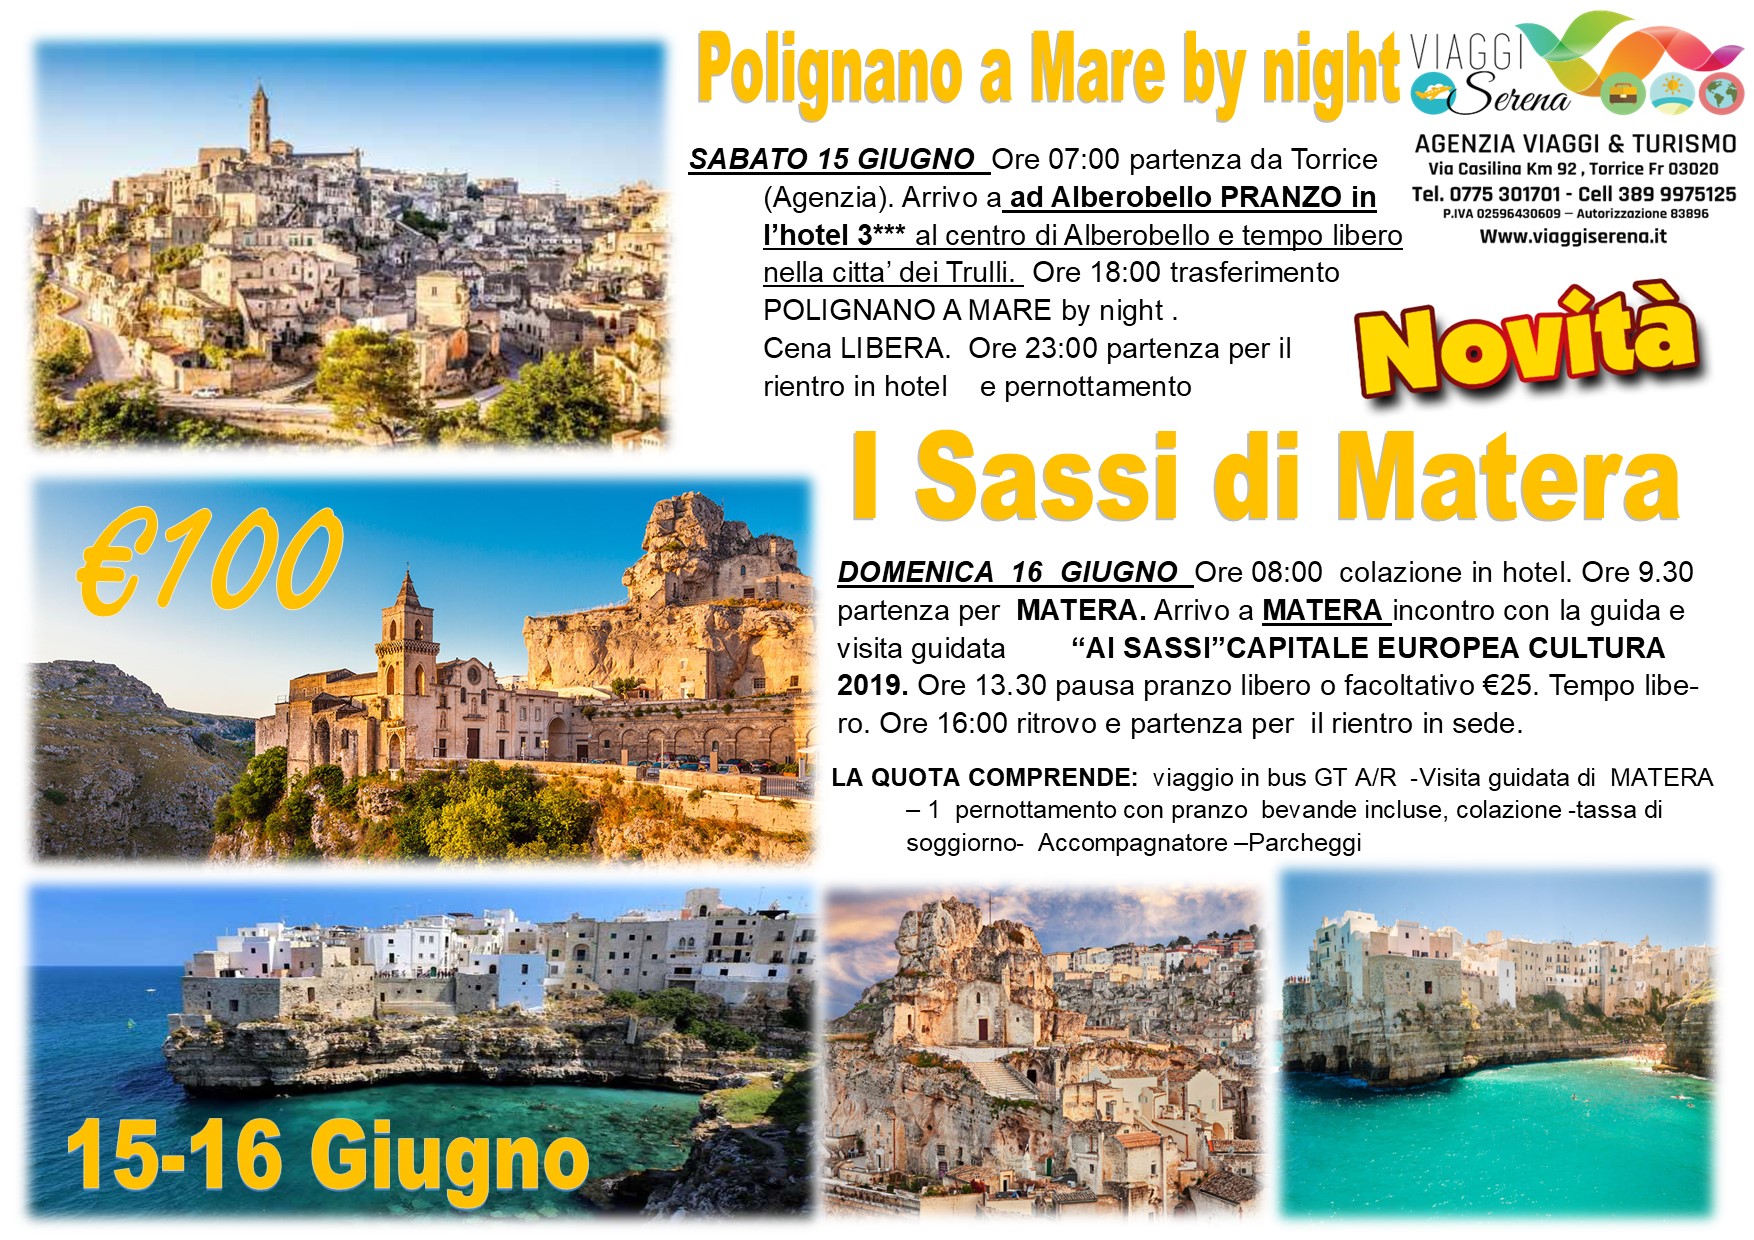 Viaggi di gruppo: Polignano a Mare by night , I Sassi di Matera & Alberobello 15-16 Giugno € 100,00